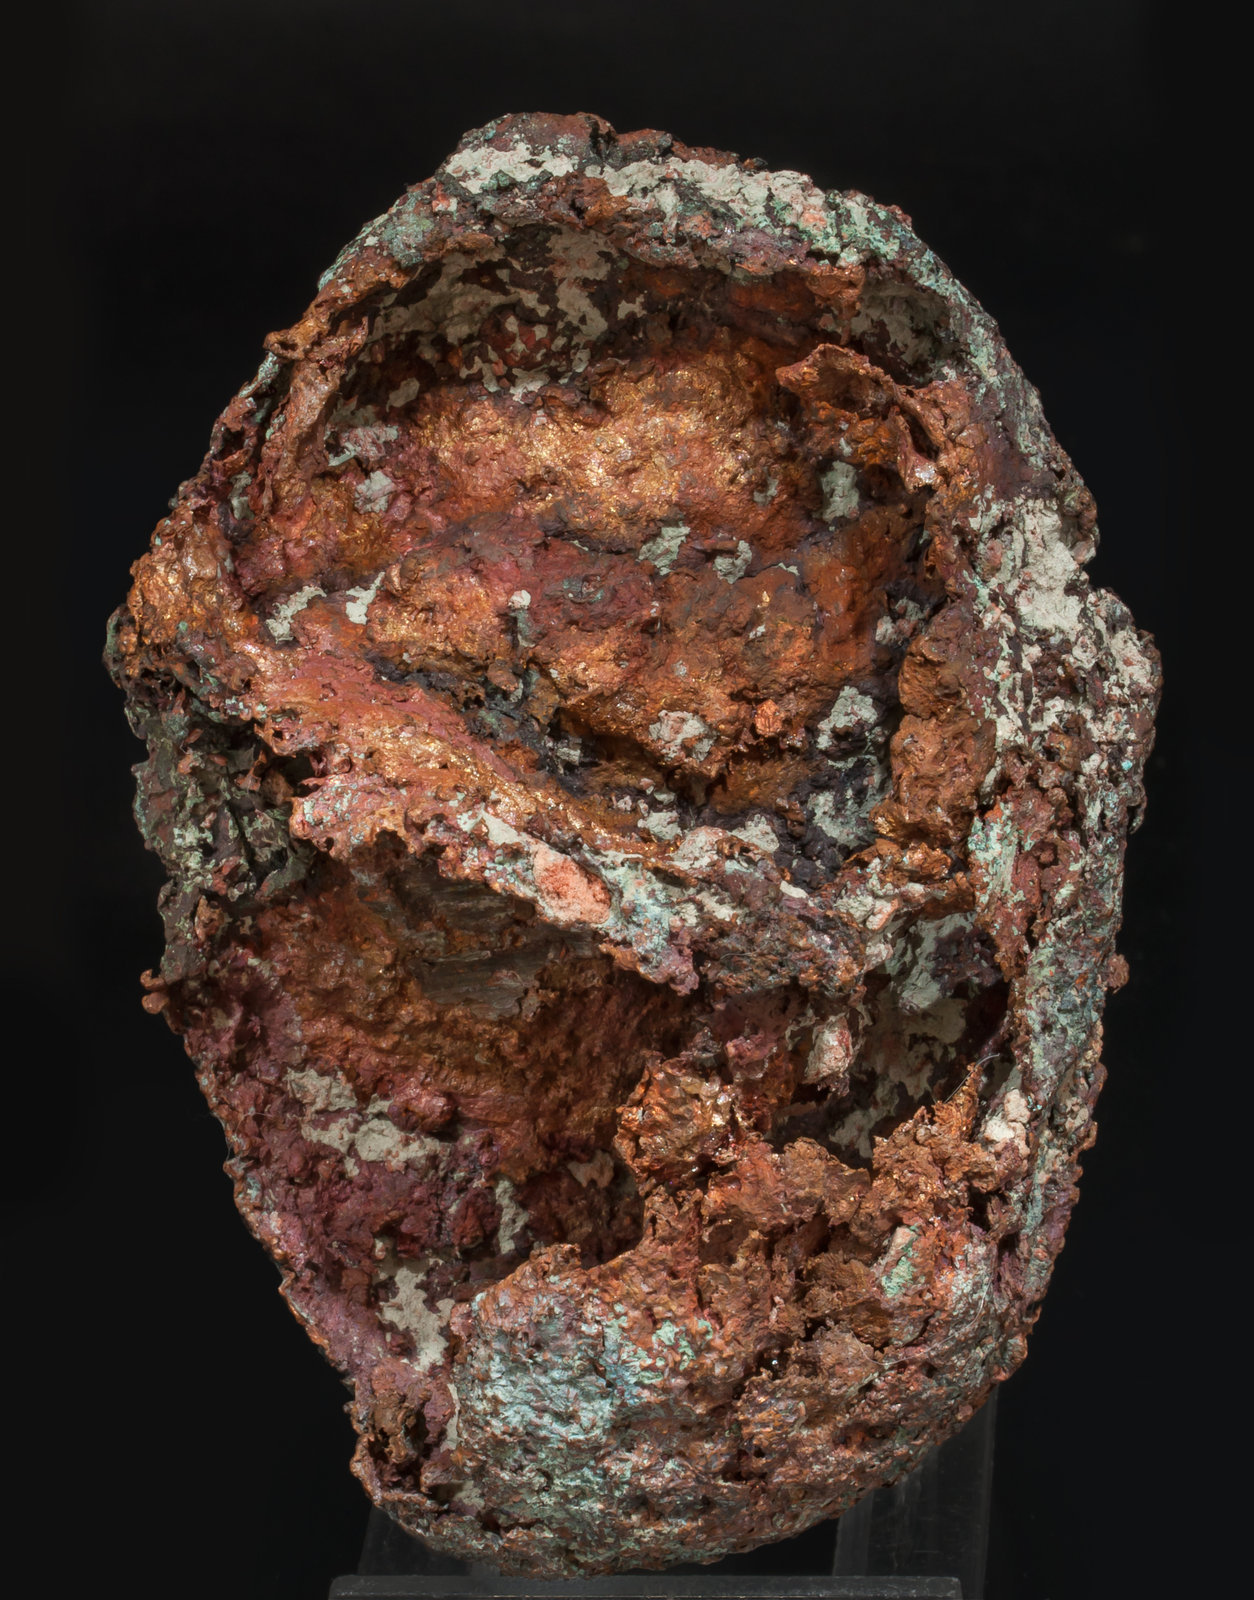 specimens/s_imagesAF1/Copper_skull-TZ91AF1f.jpg